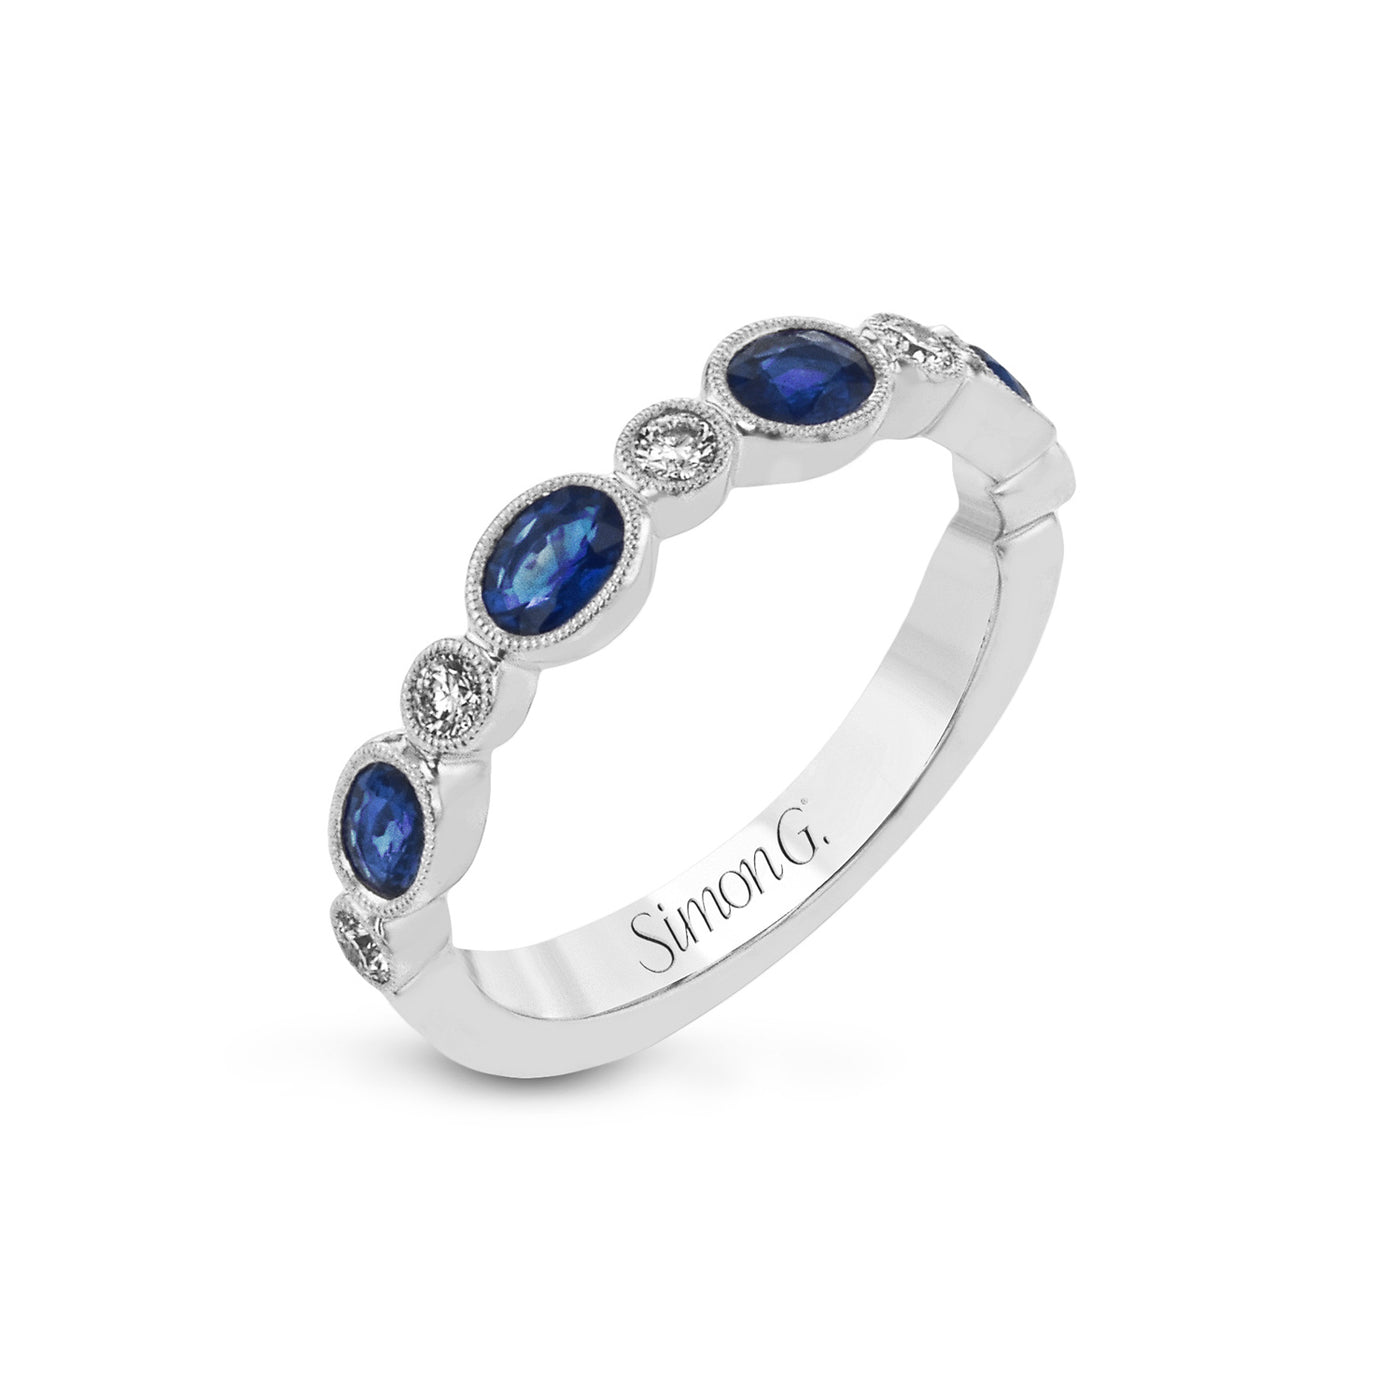 Simon G 18k White Gold Diamond and Sapphire Fashion Ring – LR2462